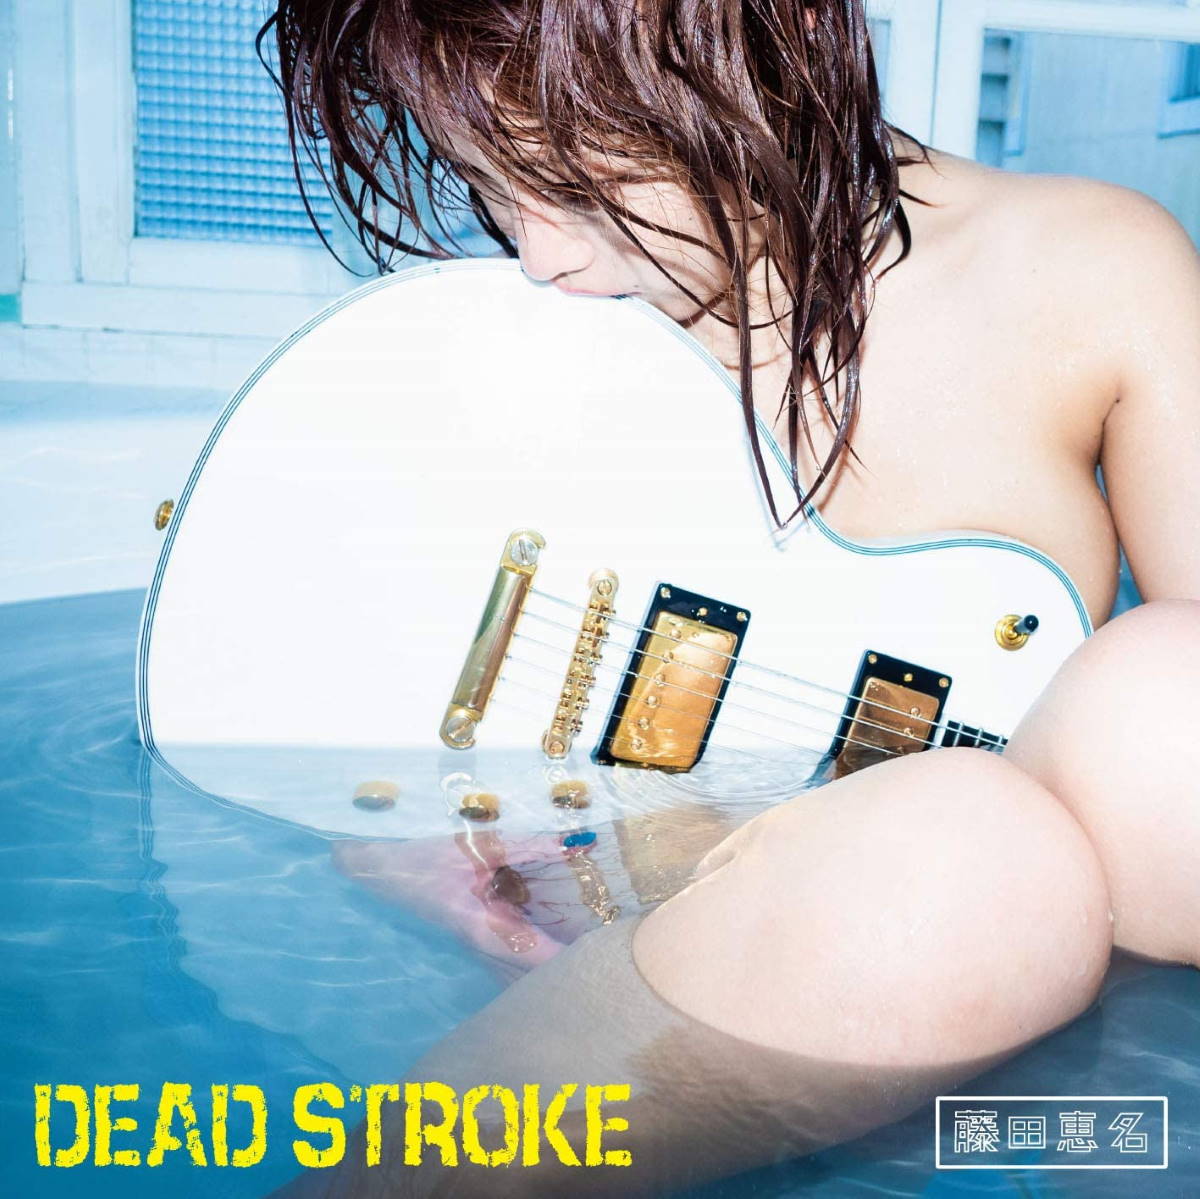 『藤田恵名 - DEAD STROKE 歌詞』収録の『DEAD STROKE』ジャケット